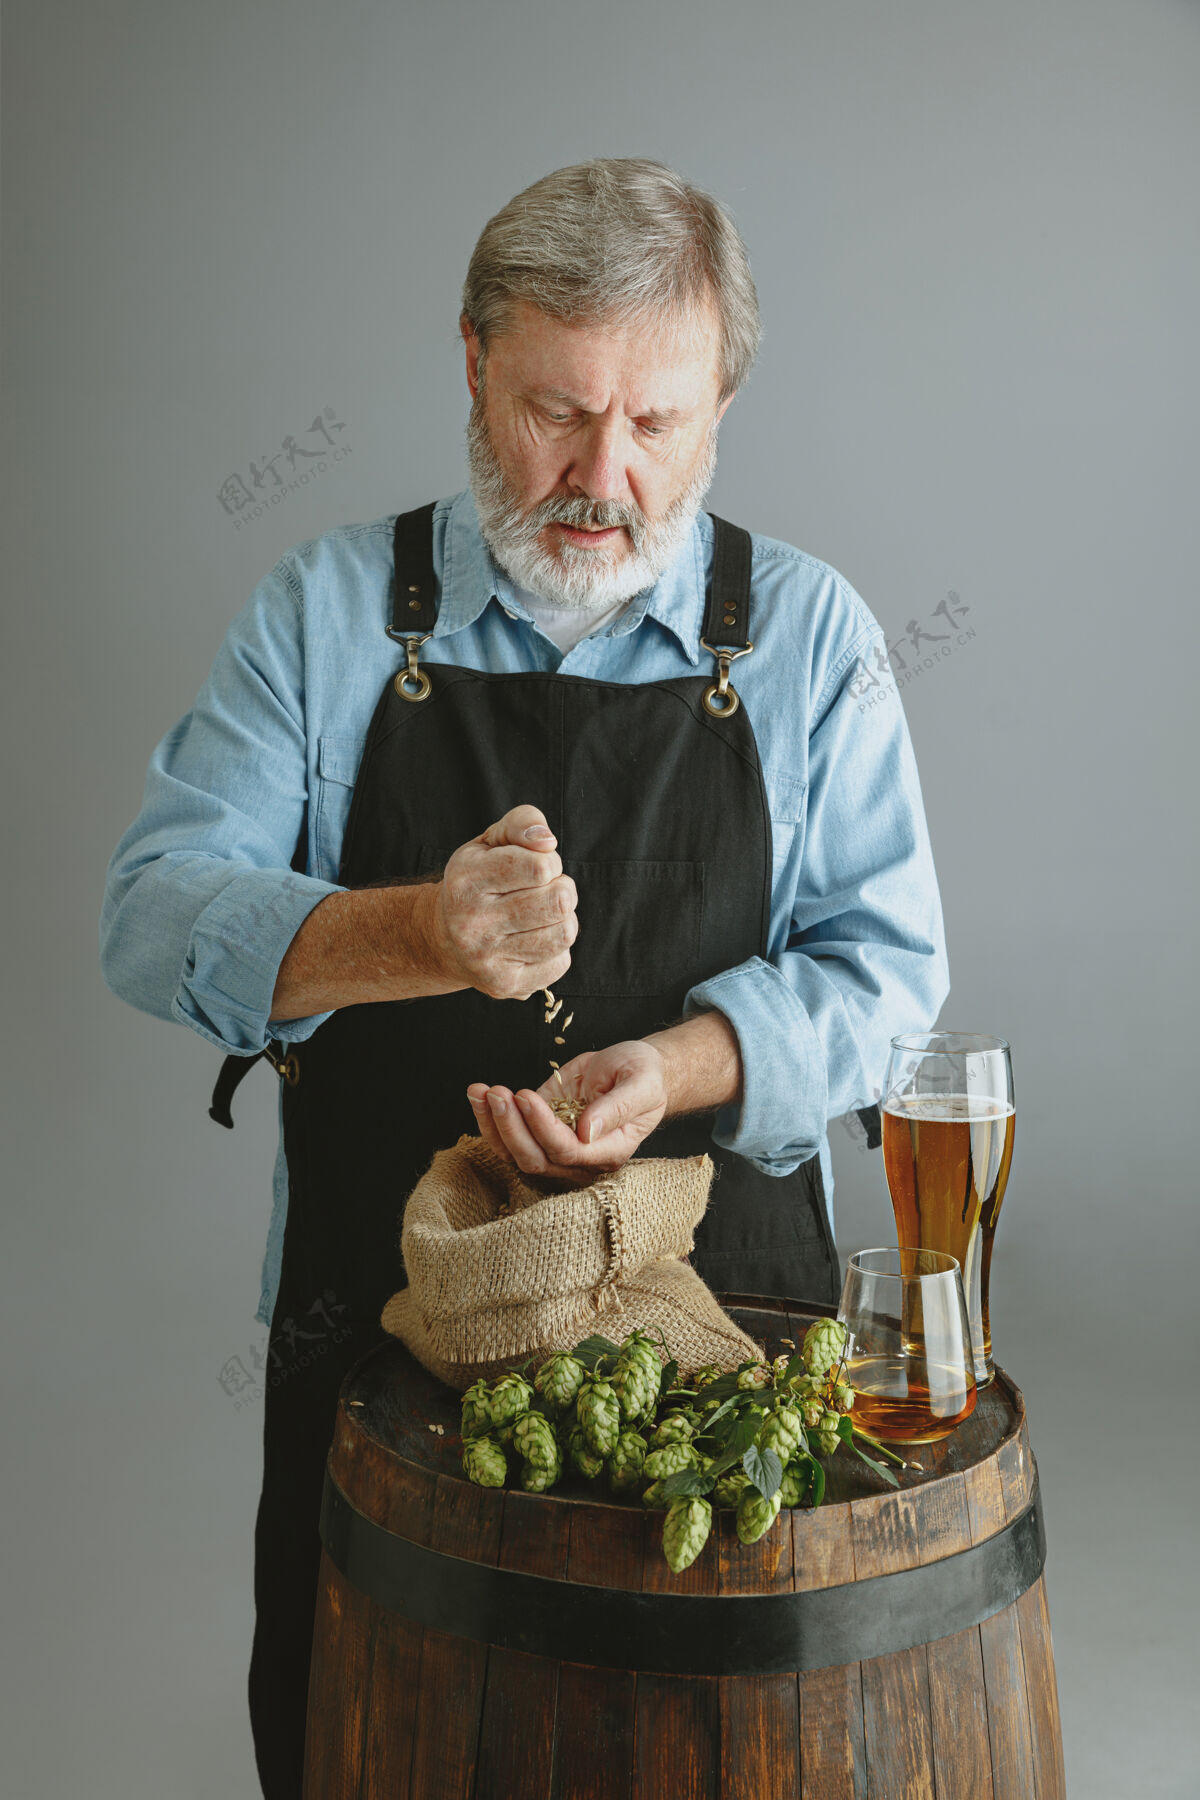 酿酒自信的高级酿酒师 在灰色墙壁上的木桶上 用自制的玻璃啤酒工厂老板展示了他的产品 检验质量酒吧微型围裙